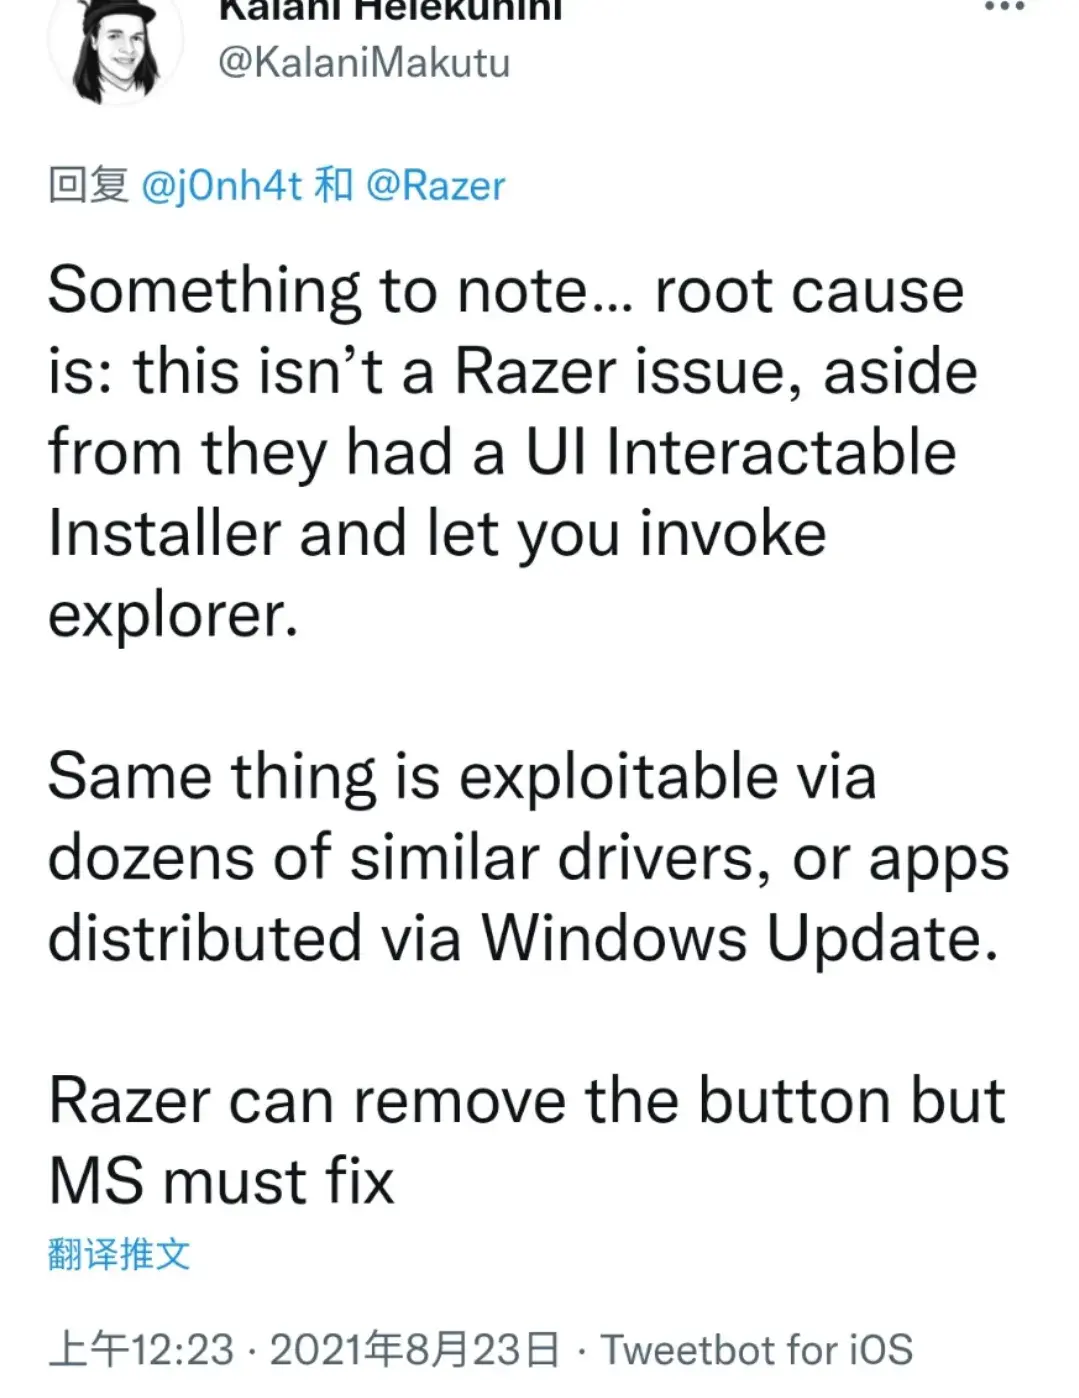 用这种鼠标的注意了：插入2分钟就能获取Windows最高权限